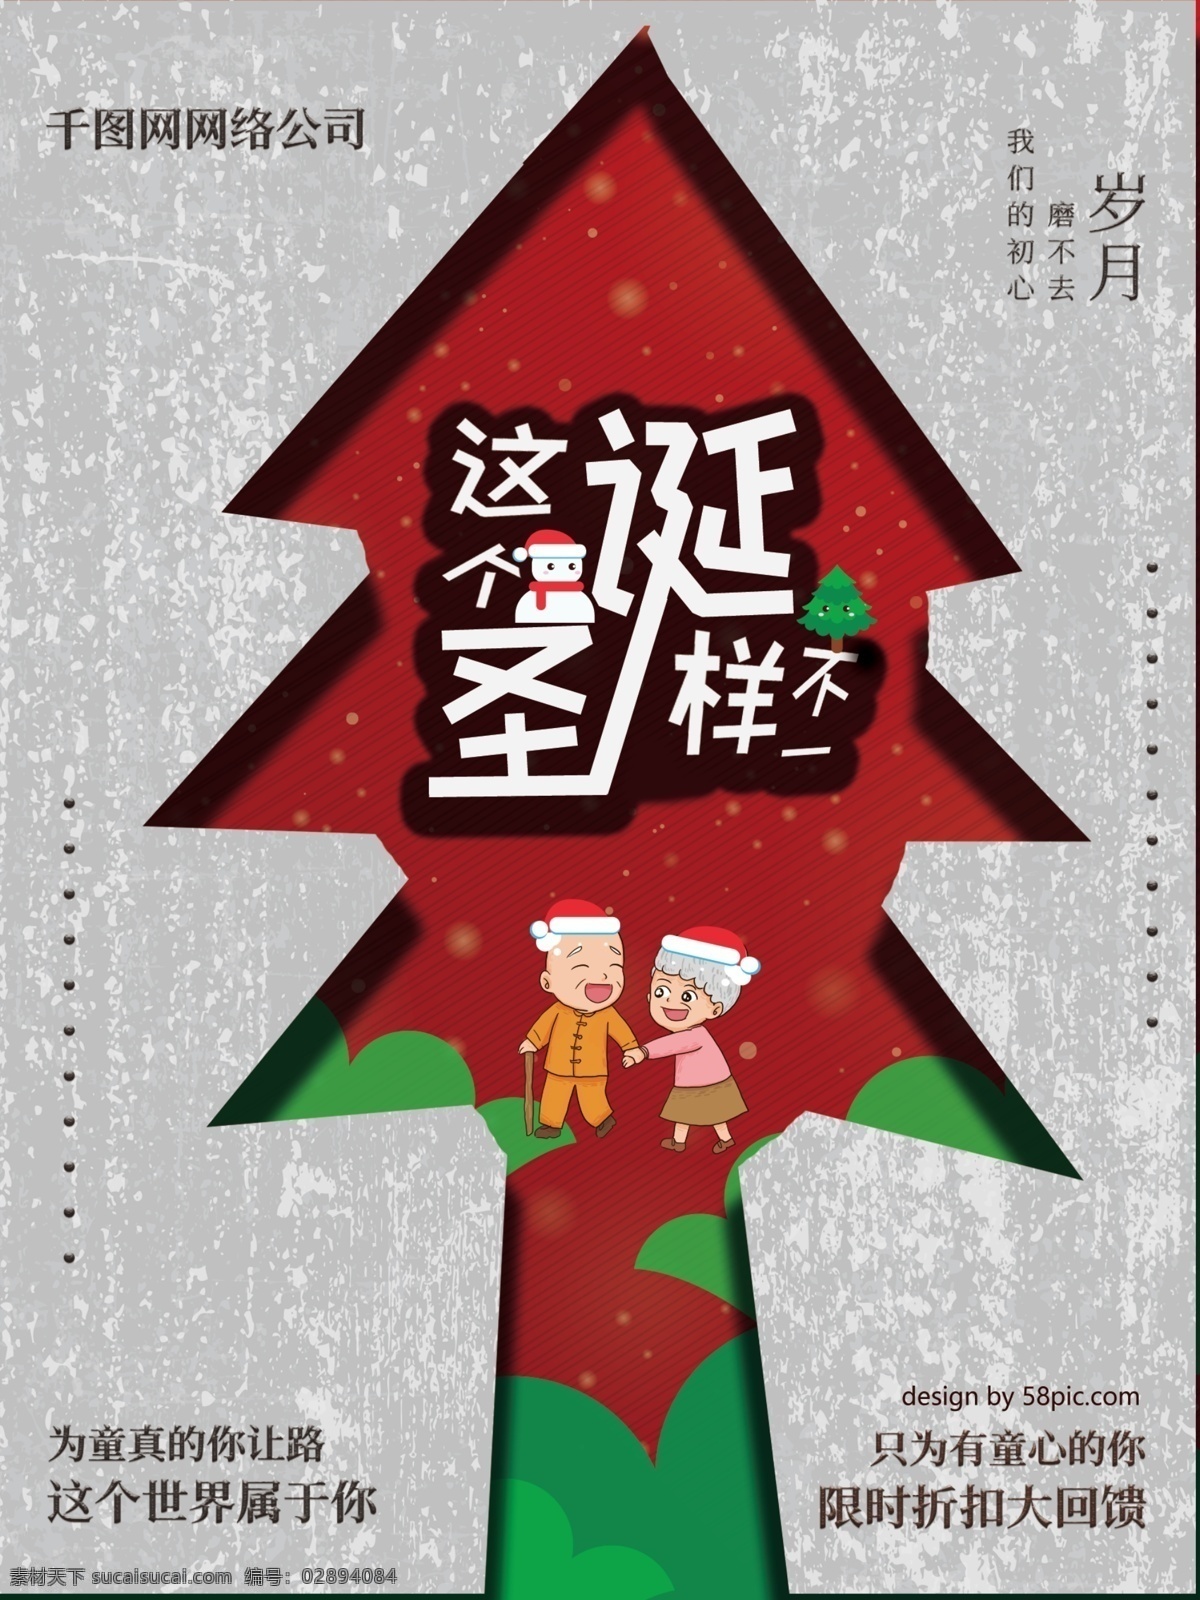 圣诞 促销 卡通 可爱 创意 海报 圣诞节 优惠 手绘 活动 甩卖 打折 优惠使用 活动使用 促销使用